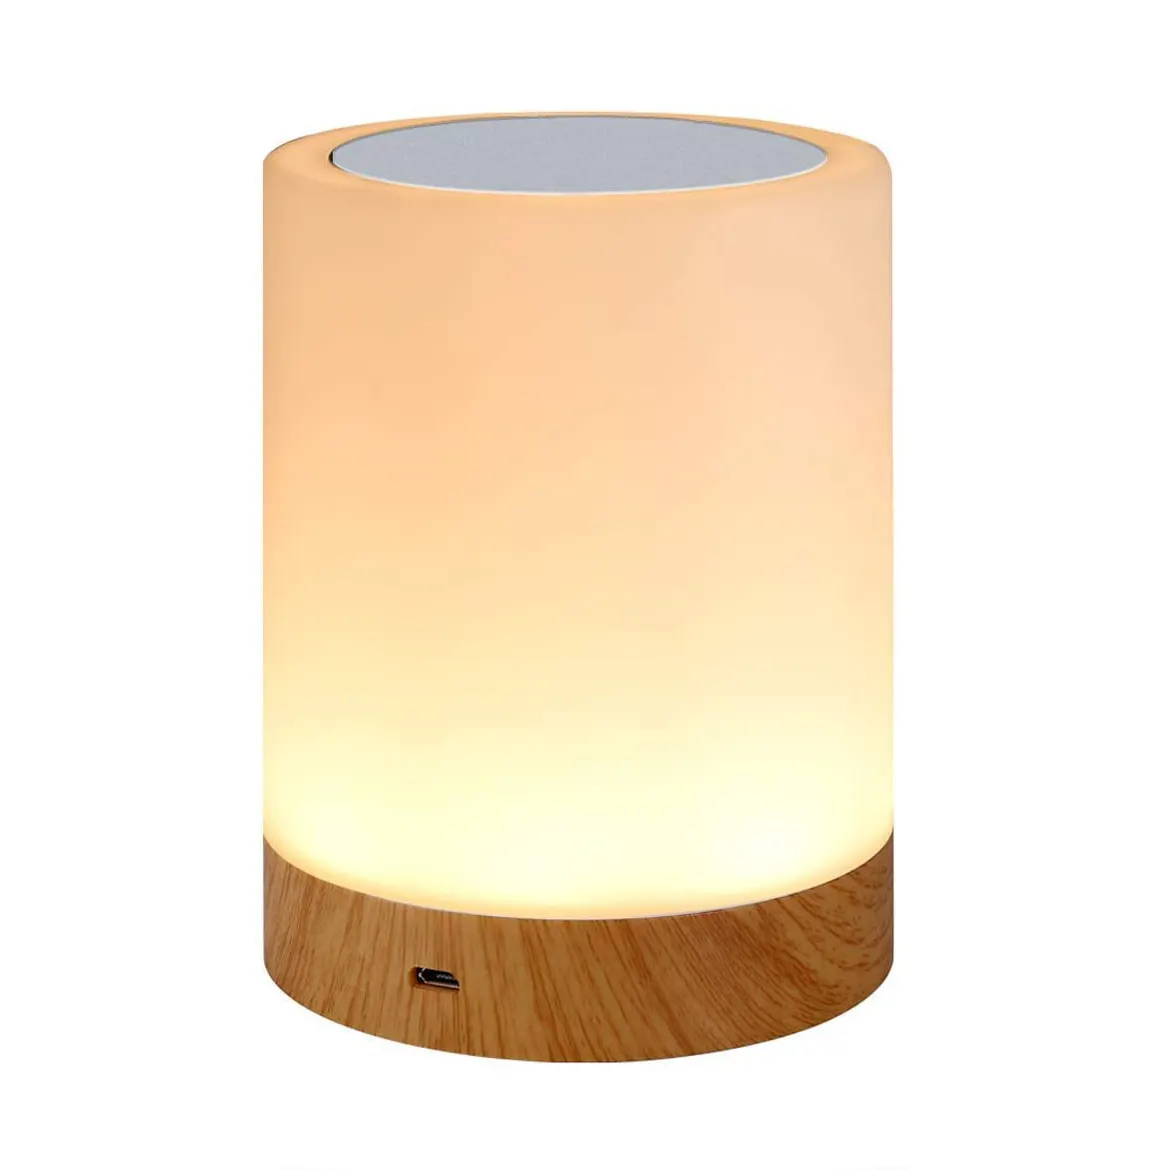 مصباح طاولة LED يعمل باللمس, مصباح طاولة LED يعمل باللمس مصباح ليلي USB قابل لإعادة الشحن ، متعدد الألوان ، محمول لغرفة النوم وغرفة المعيشة والتخييم والأطفال